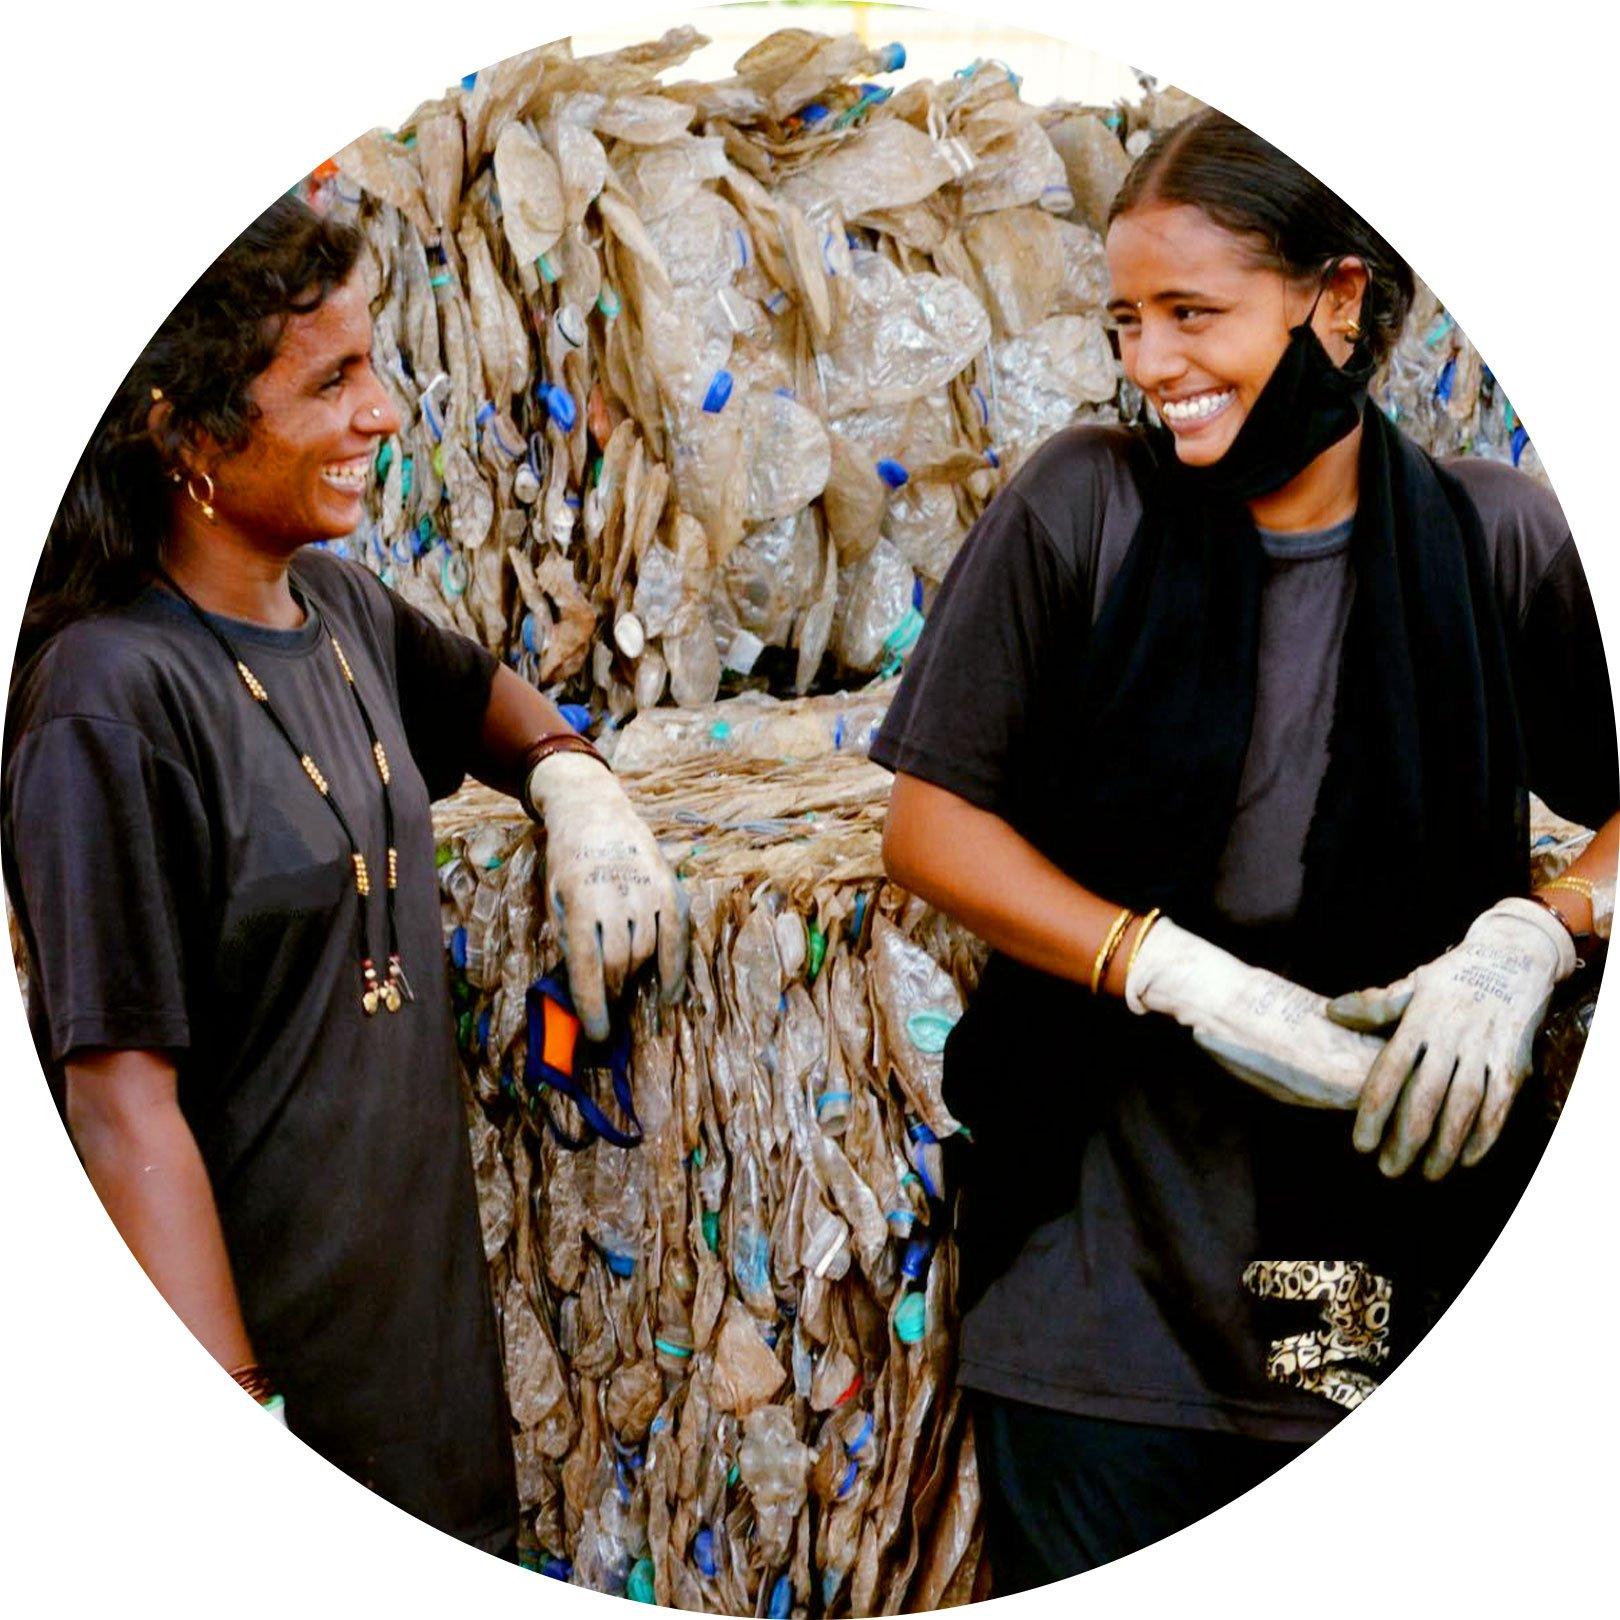 essence y Plastics For Change están trabajando juntos para reciclar más